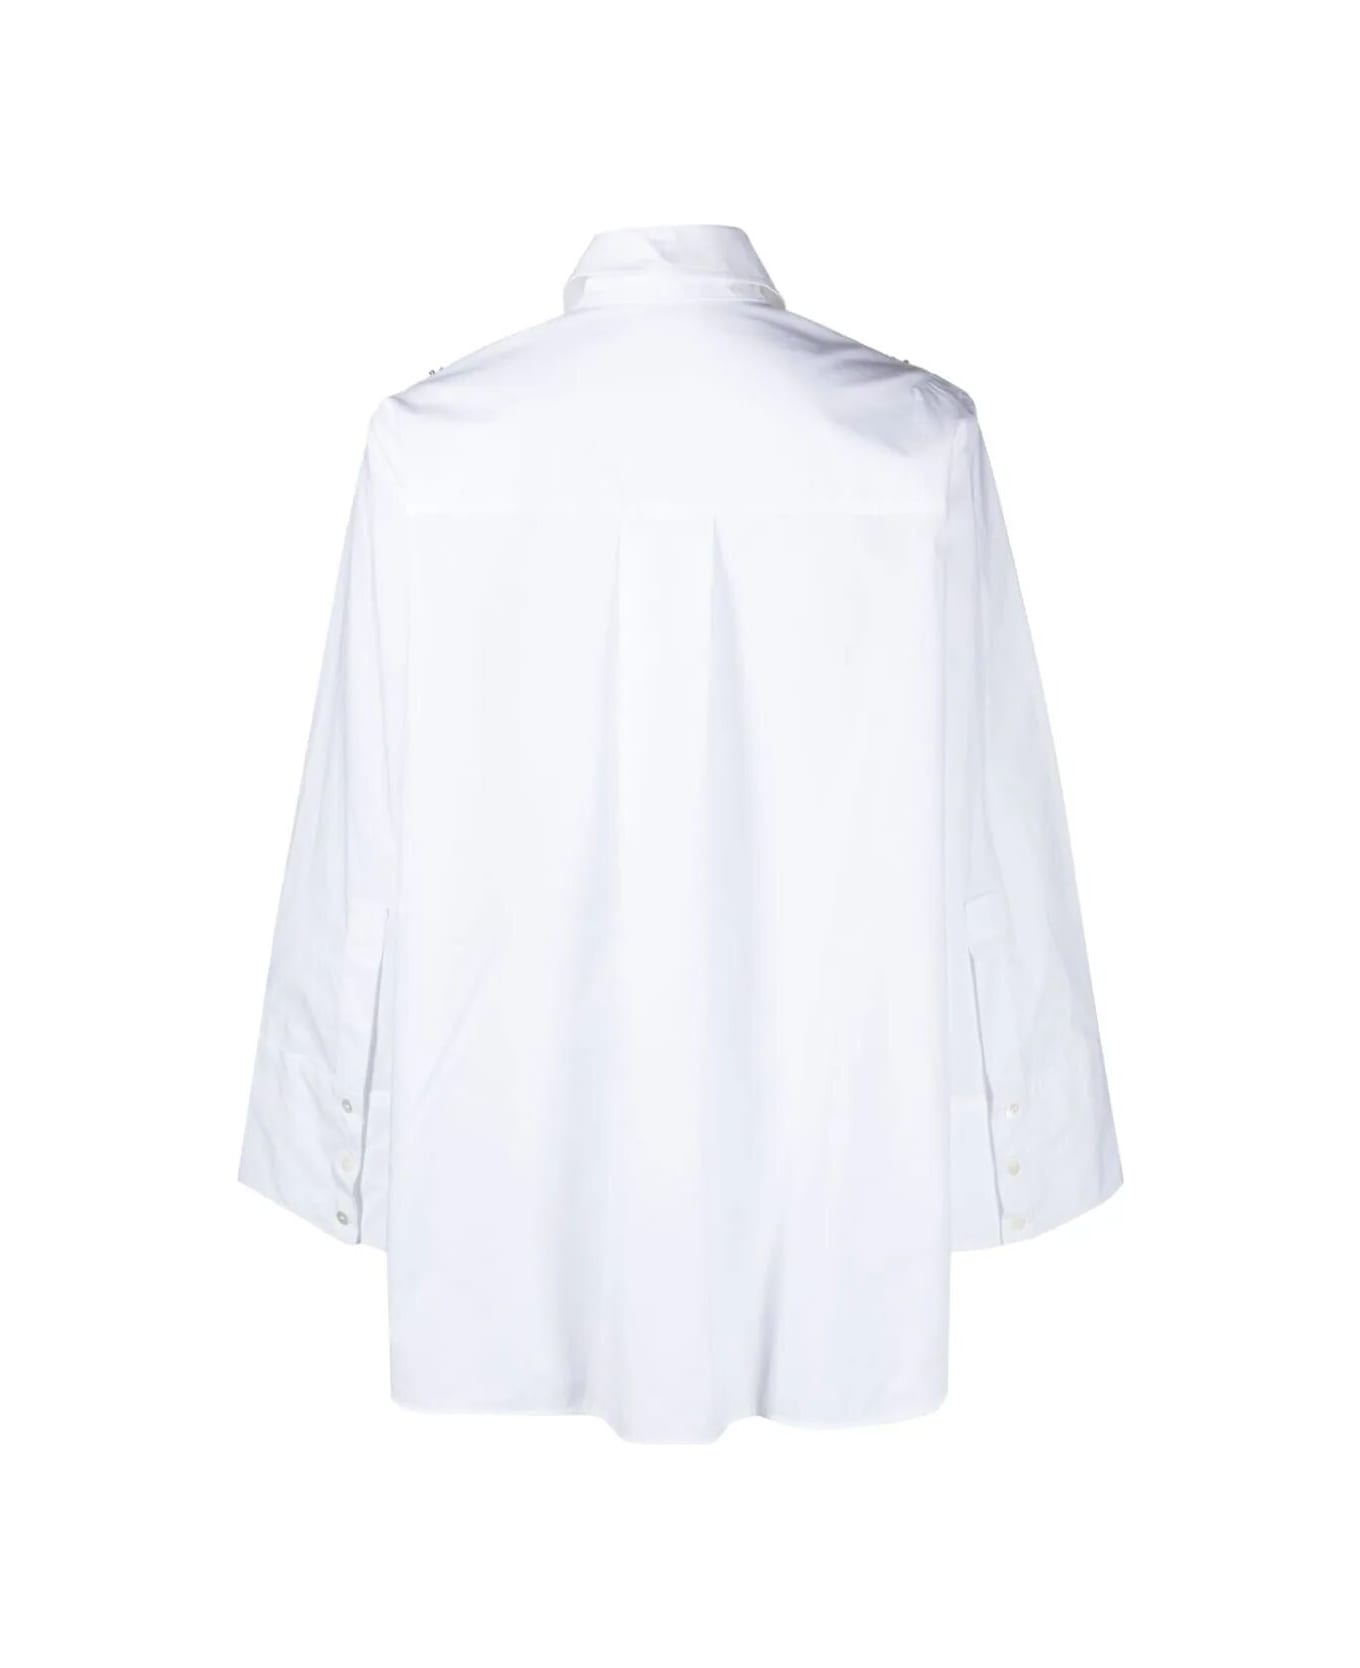 Parosh Shirt With Swarovsky - White